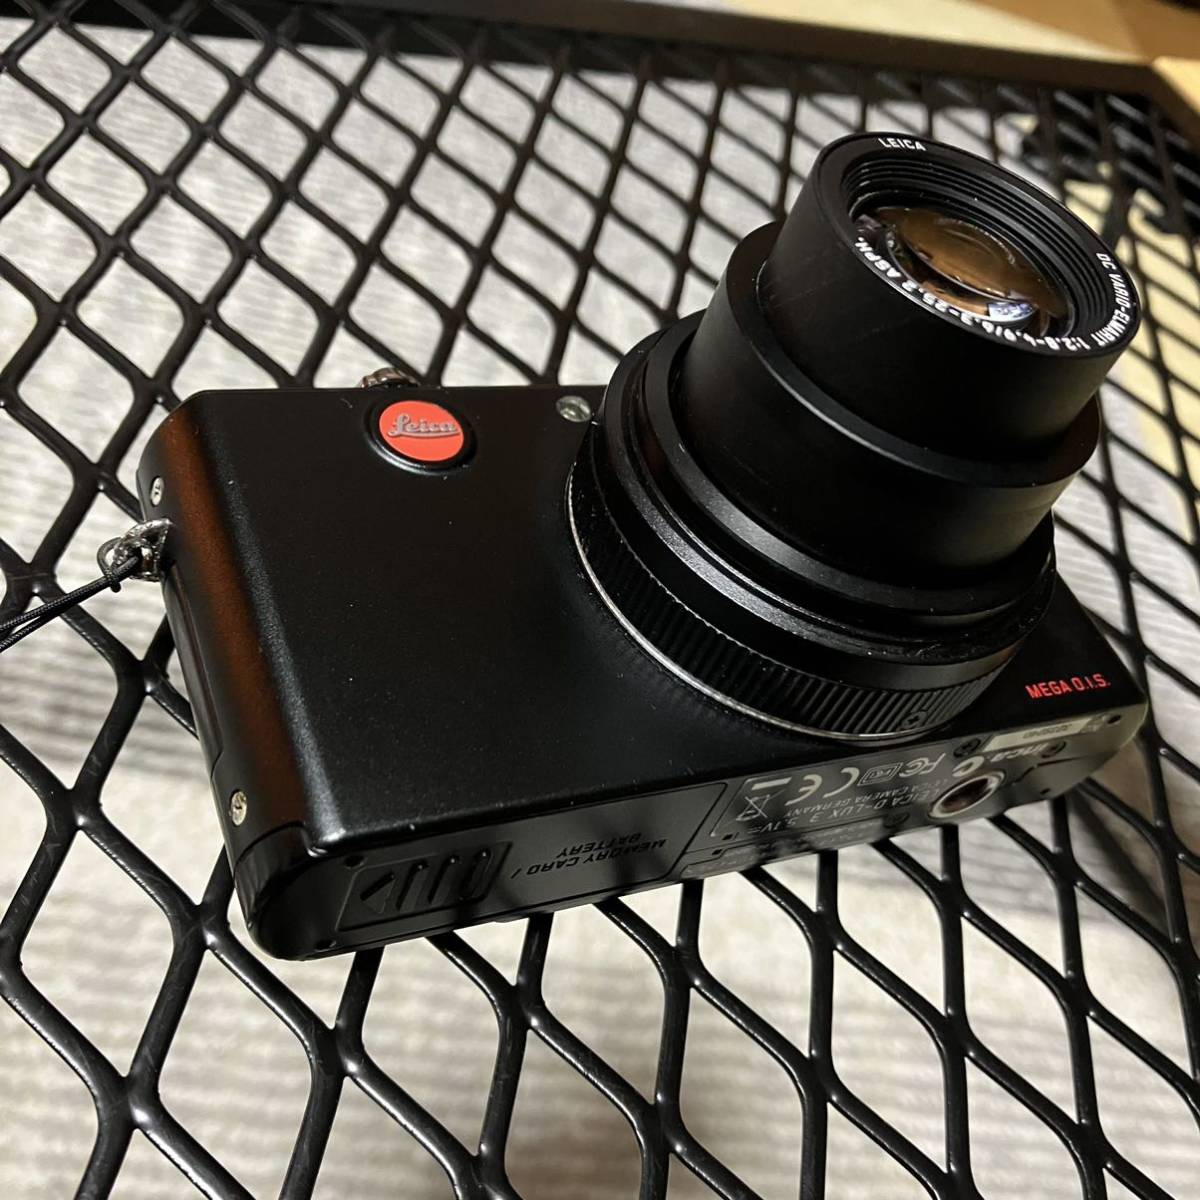 Leica D-Lux3 ライカ カメラ デジカメ 検索 ニコン キャノン seven